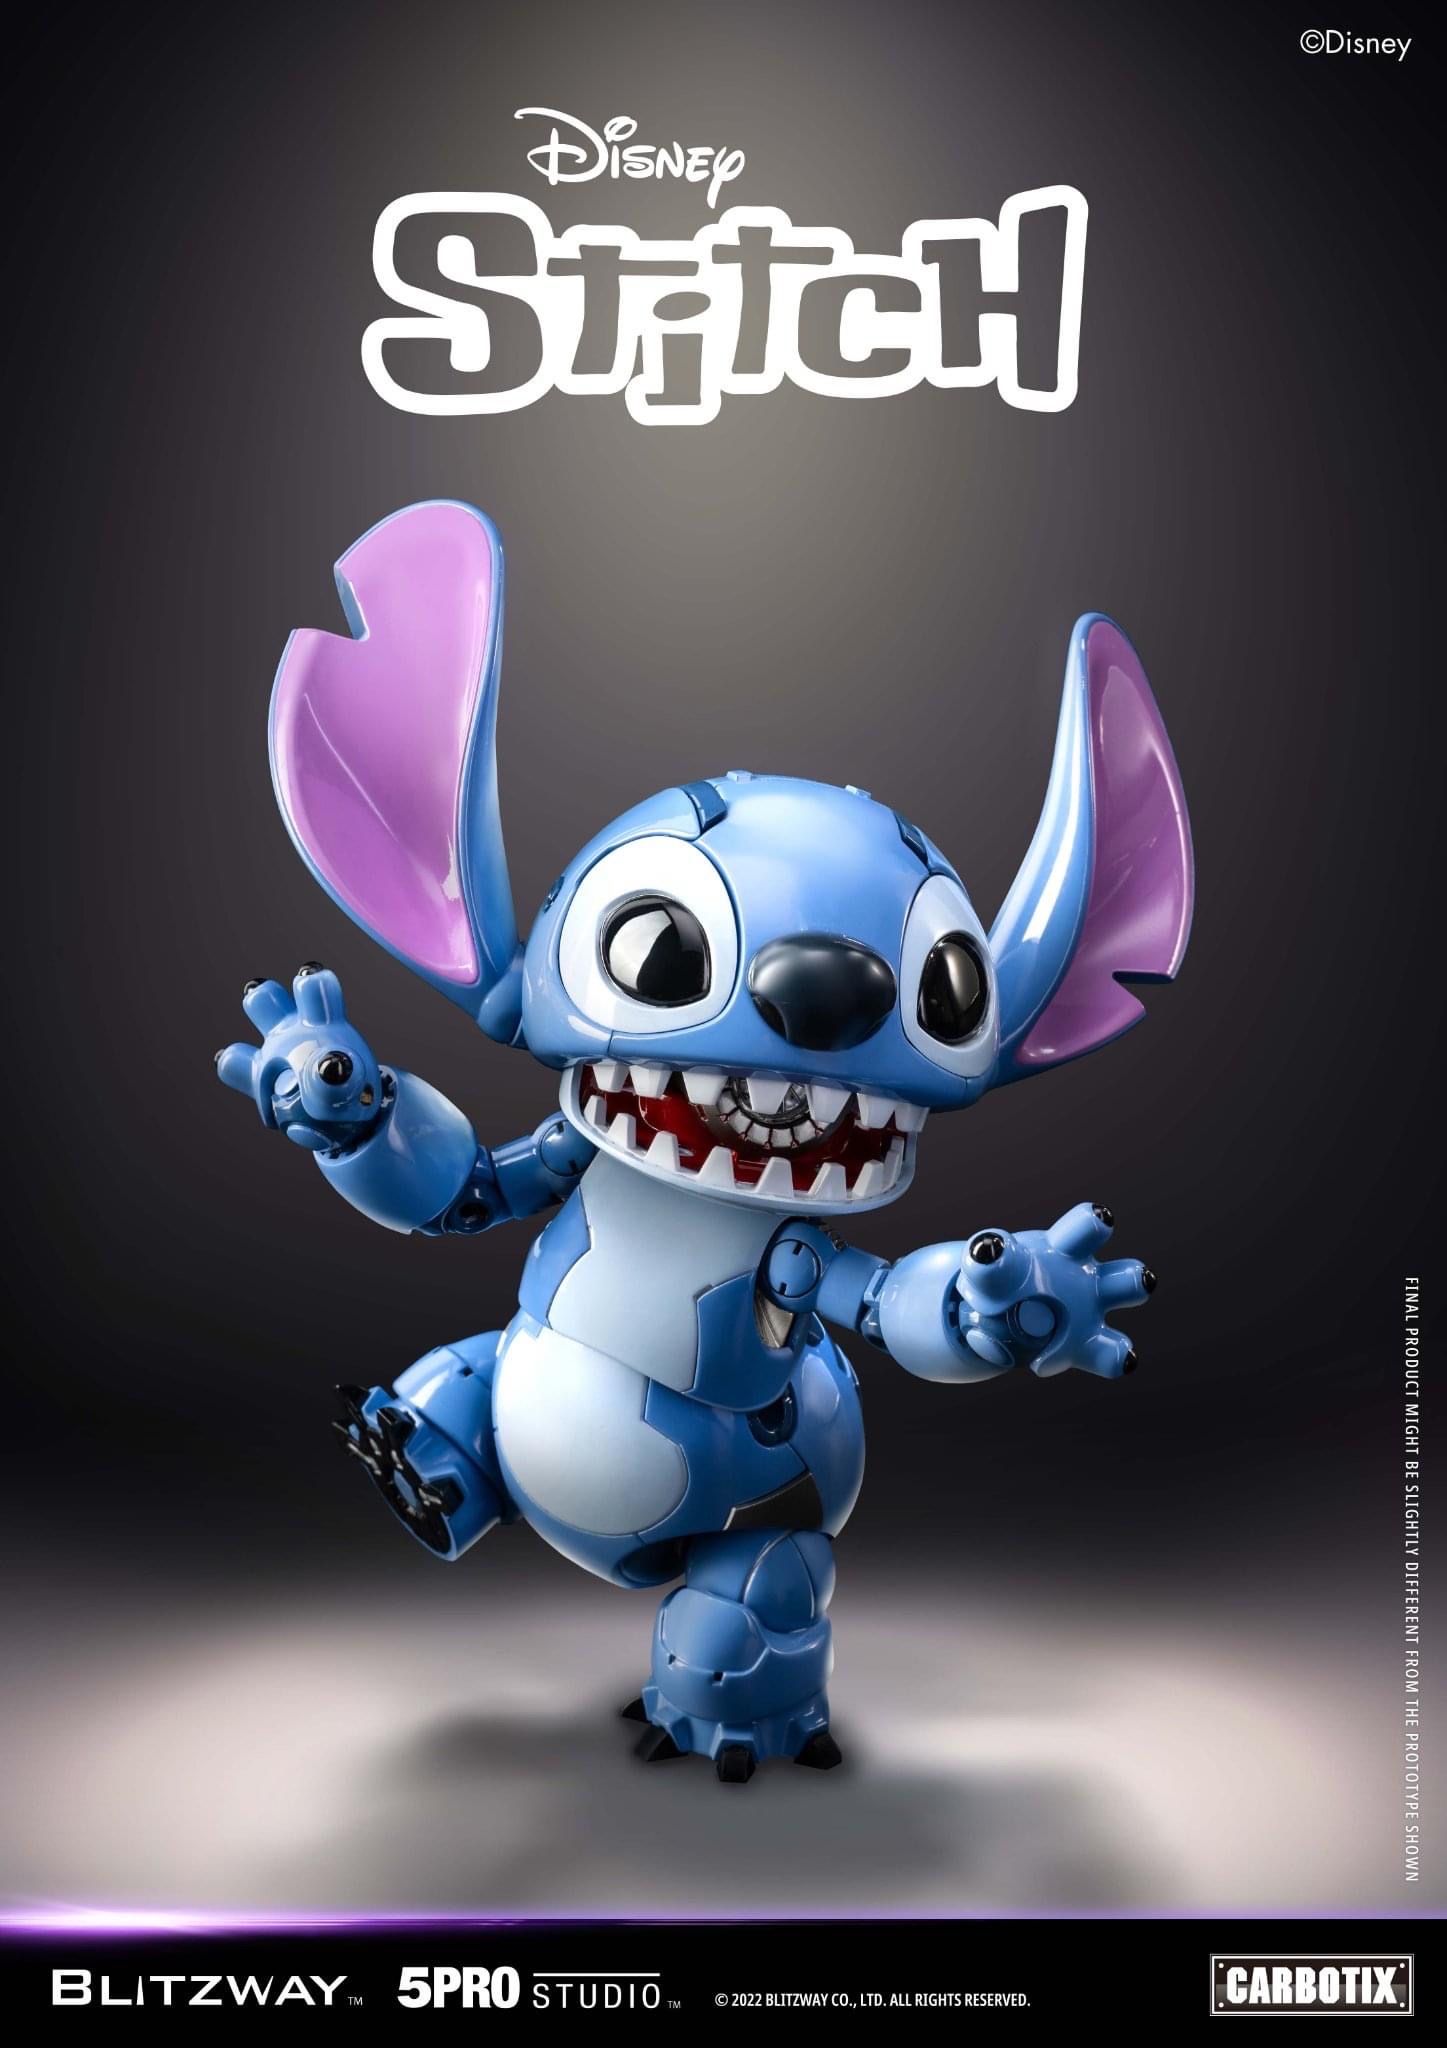 Đồ chơi Stitch sẽ đem đến cho bạn bầu không khí ngọt ngào, đáng yêu và thoải mái, giúp bạn giải tỏa căng thẳng và tìm lại cảm giác tuổi thơ với chú chuột đáng yêu này.